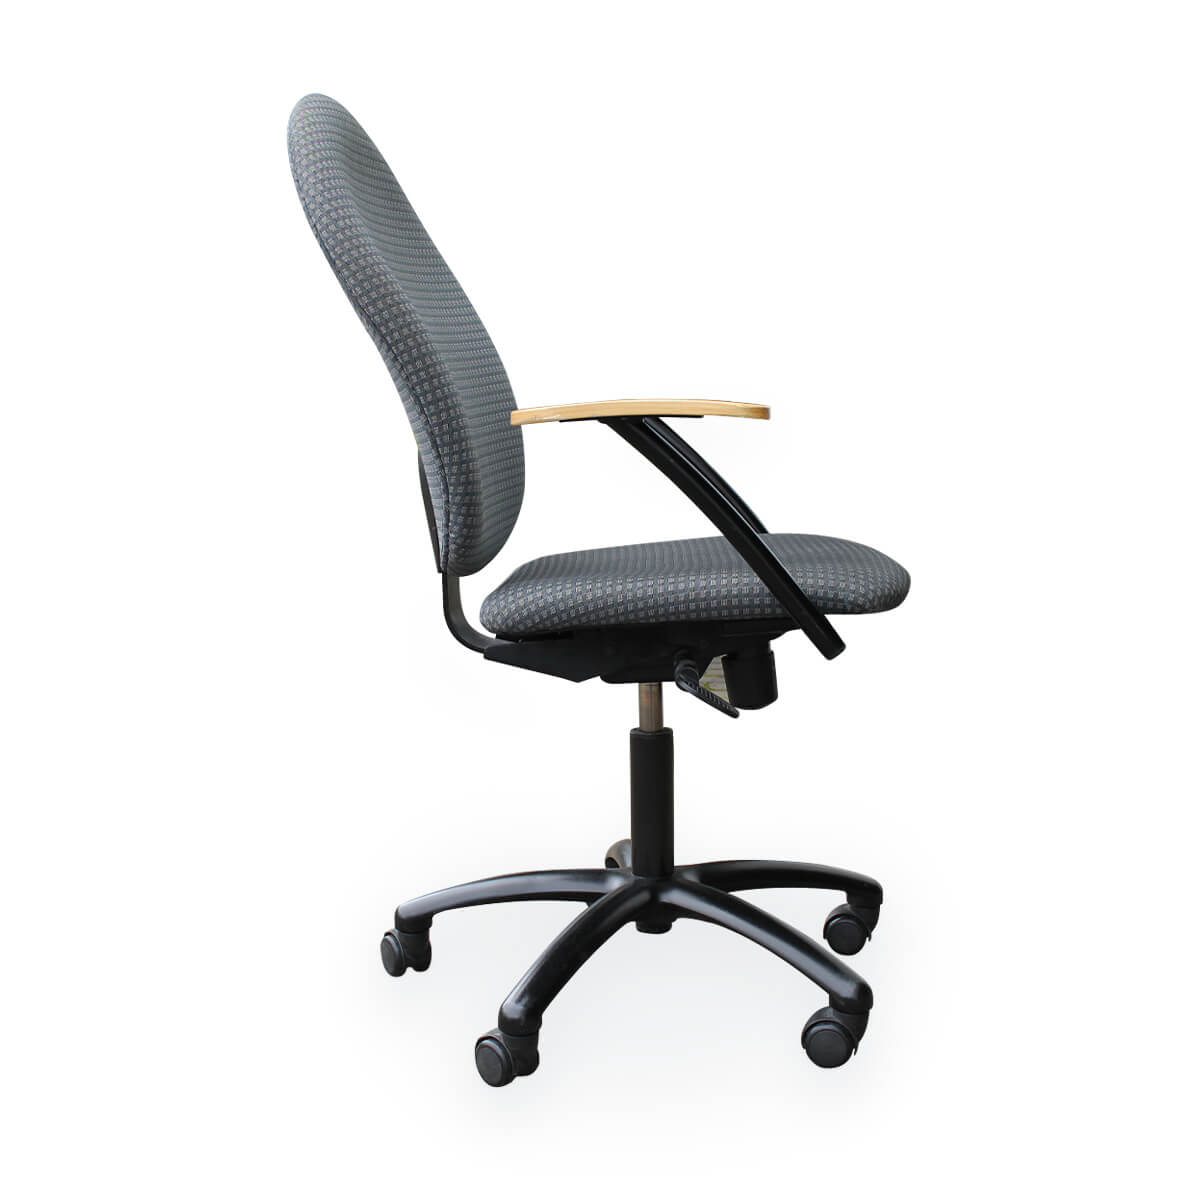 Naudotos biuro kėdės - Kitas - Nowy Styl - Top star